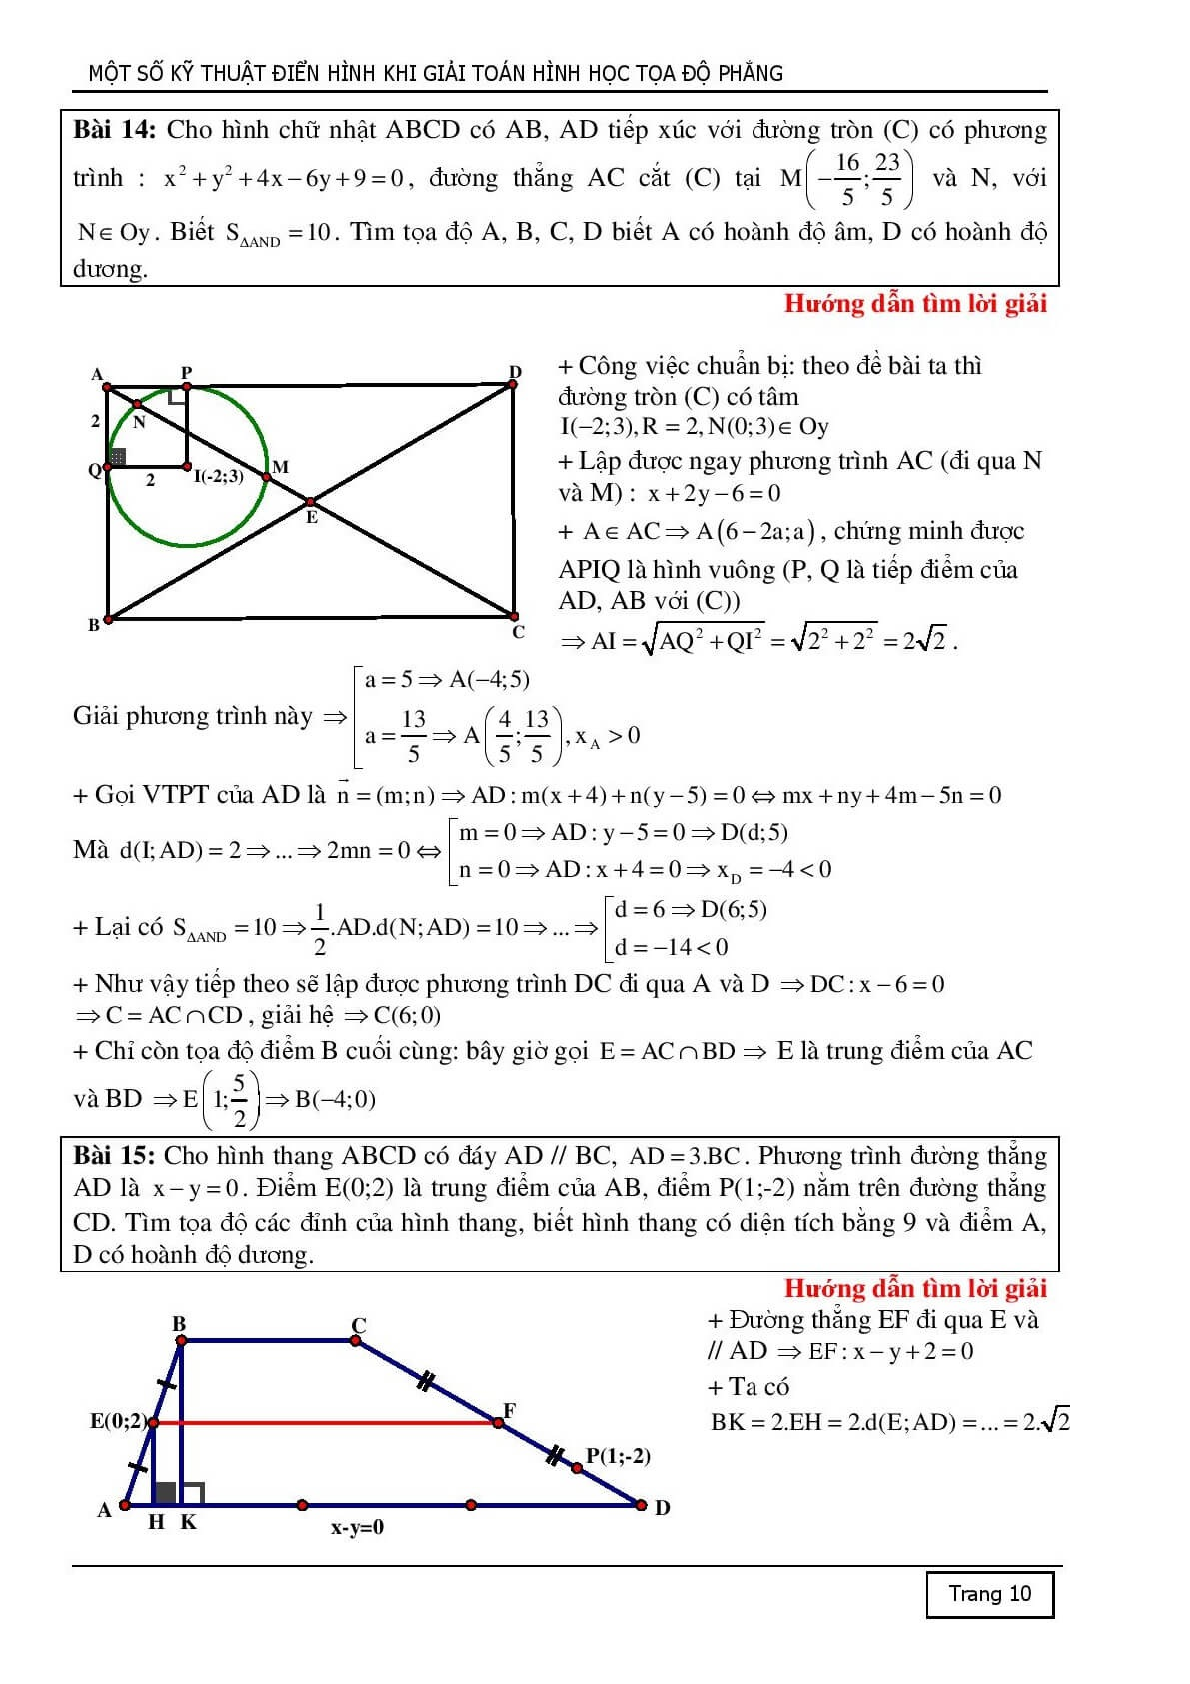 10 kỹ thuật tiếp cận để giải một bài toán hình học Oxy (trang 10)